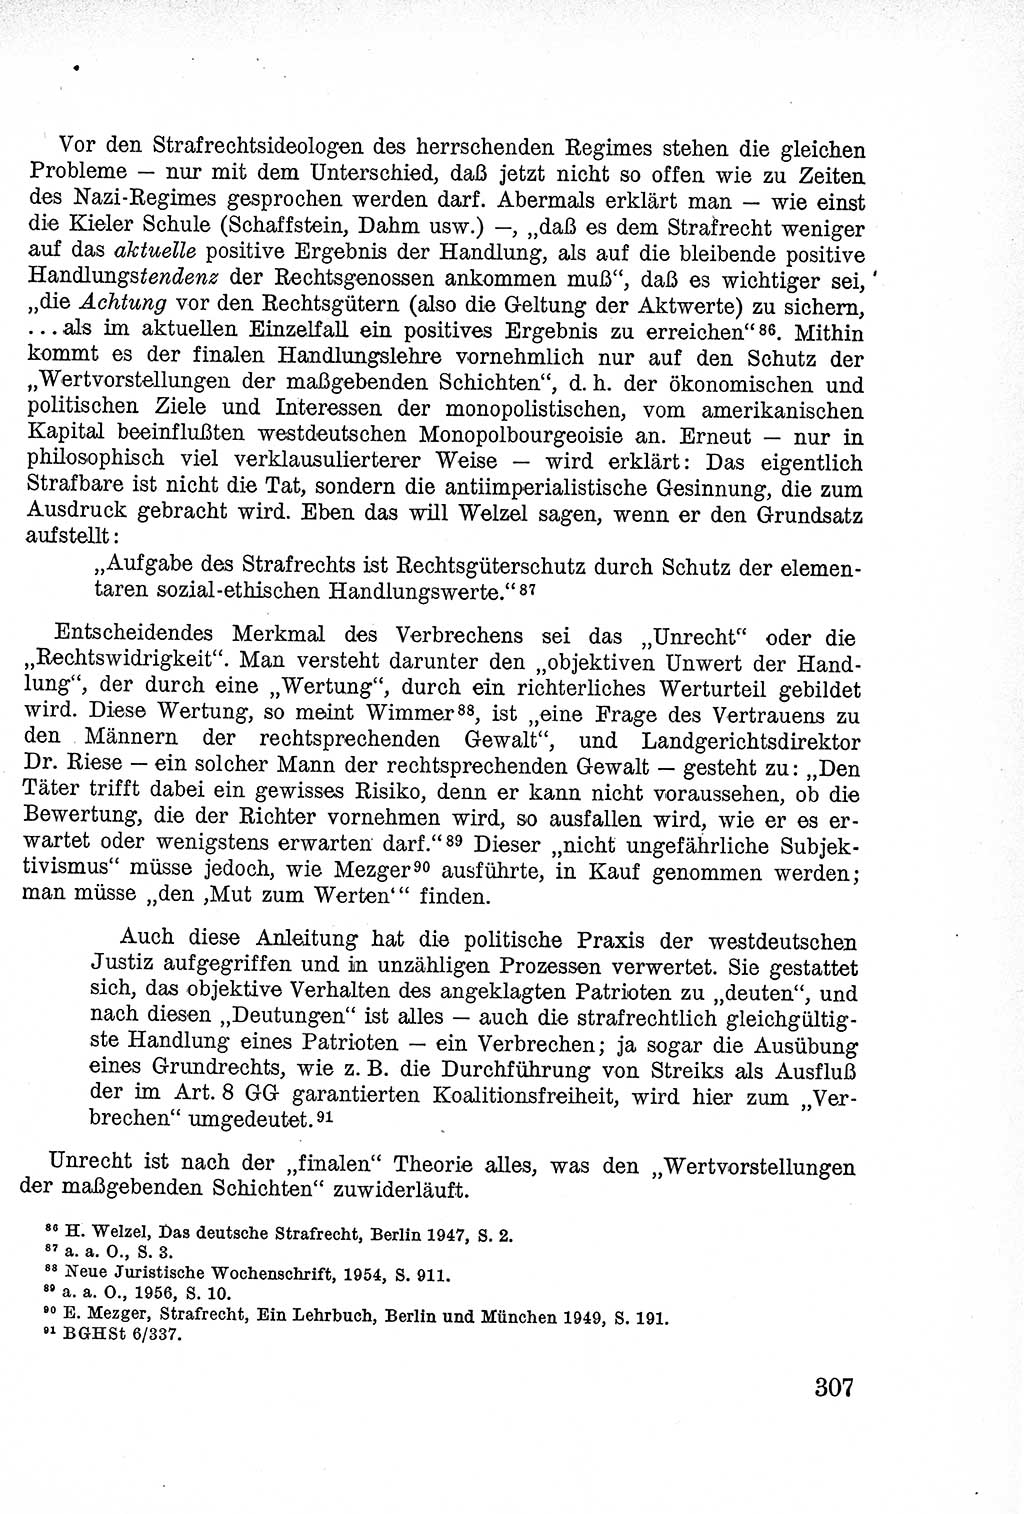 Lehrbuch des Strafrechts der Deutschen Demokratischen Republik (DDR), Allgemeiner Teil 1957, Seite 307 (Lb. Strafr. DDR AT 1957, S. 307)